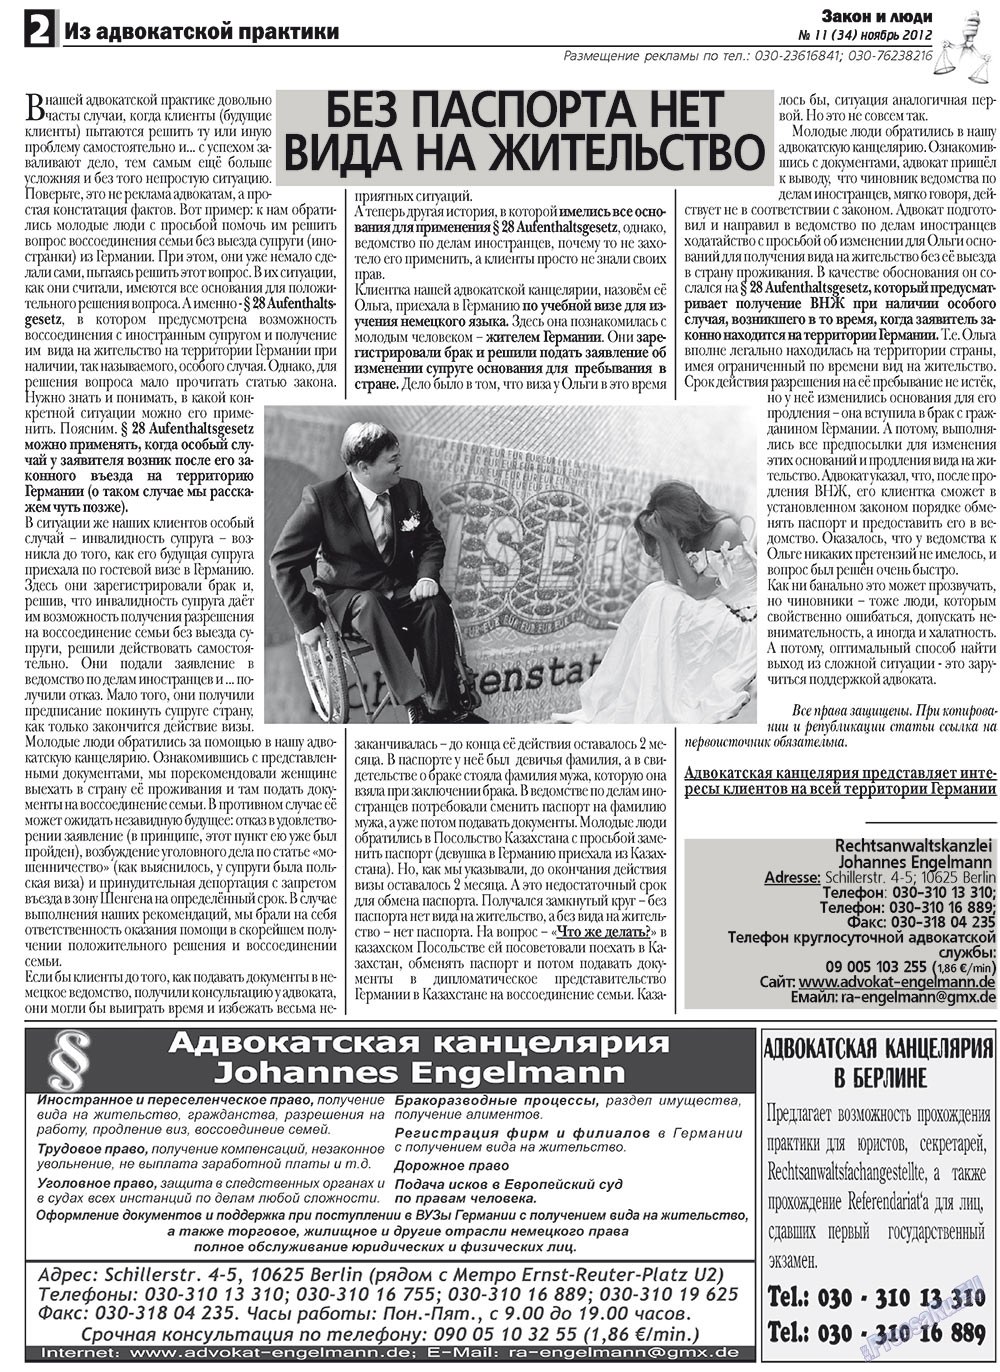 Закон и люди, газета. 2012 №11 стр.2